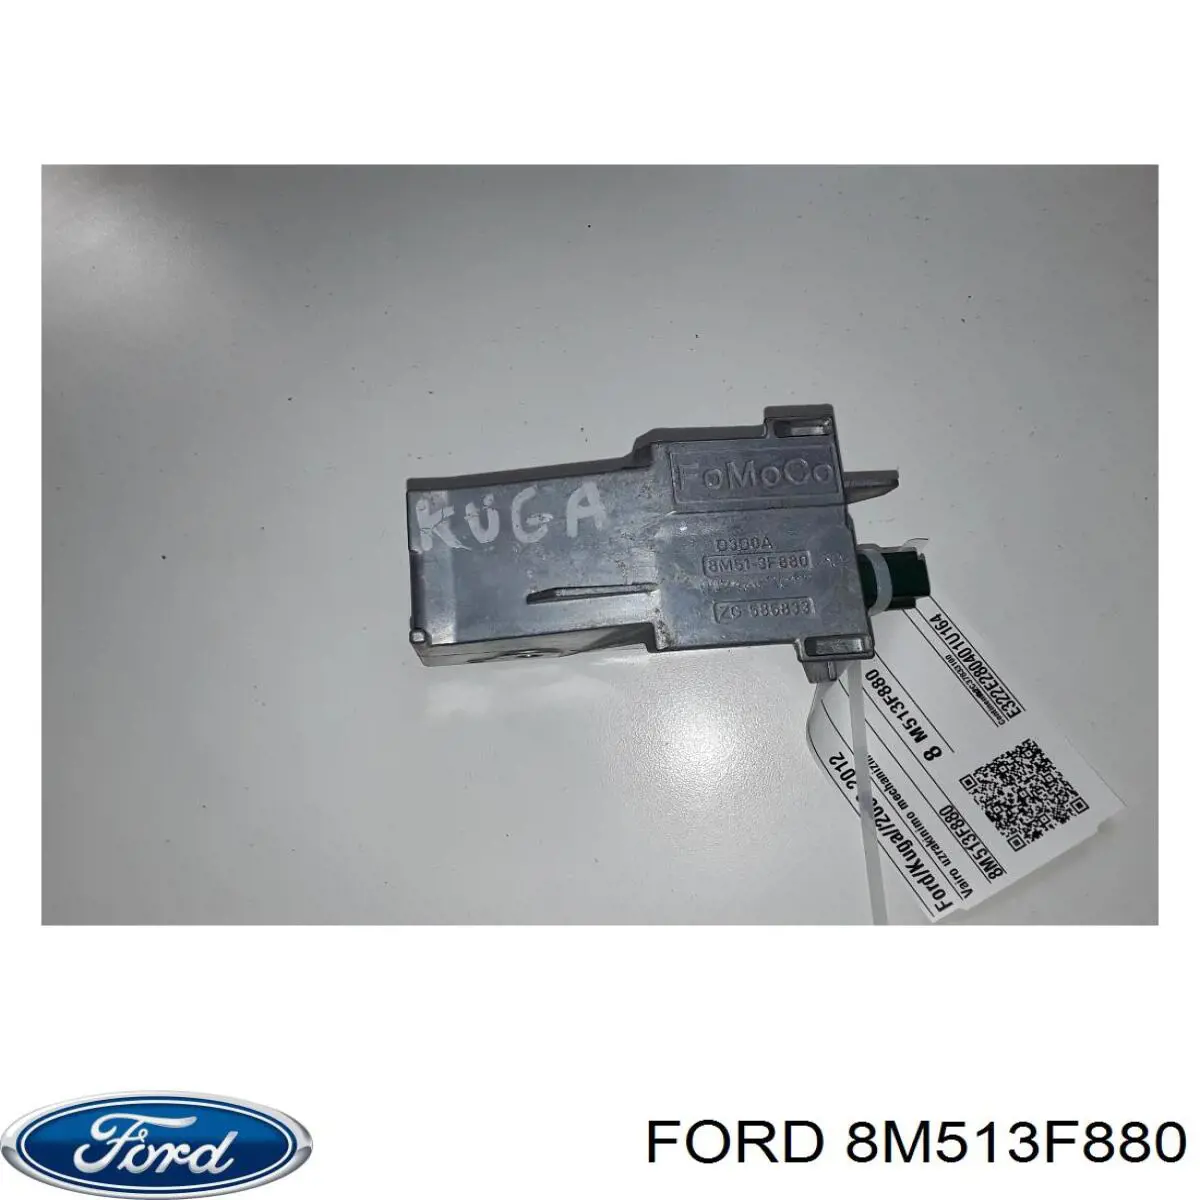 1681483 Ford electronica de columna de direccion